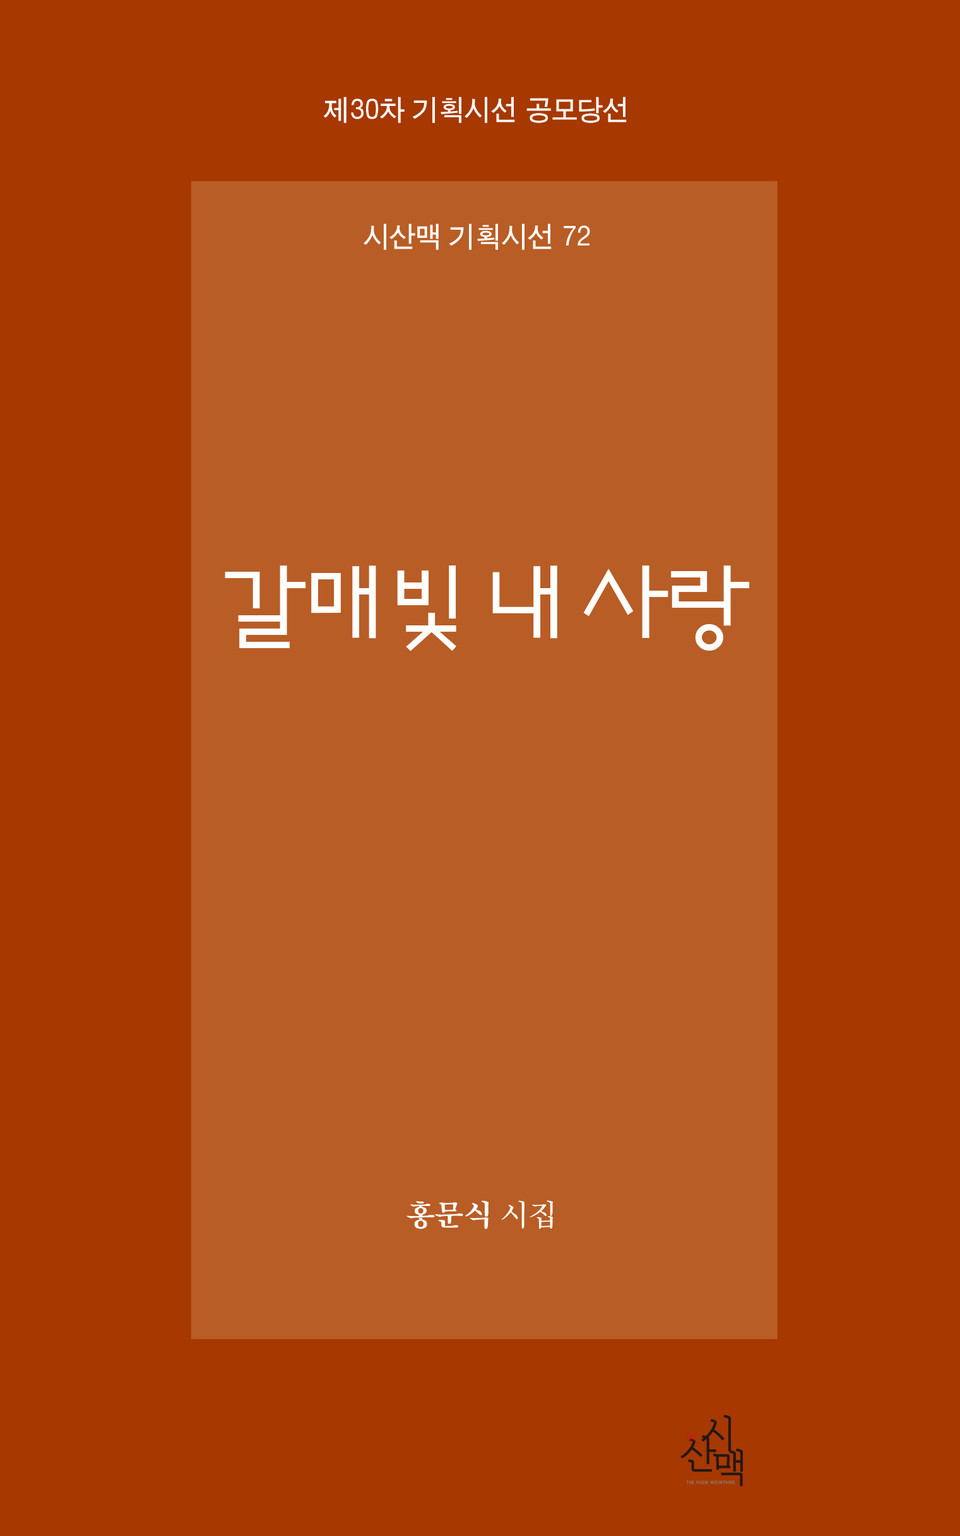 홍문식 시인의 시집 '갈매빛 내 사랑'의 표지.